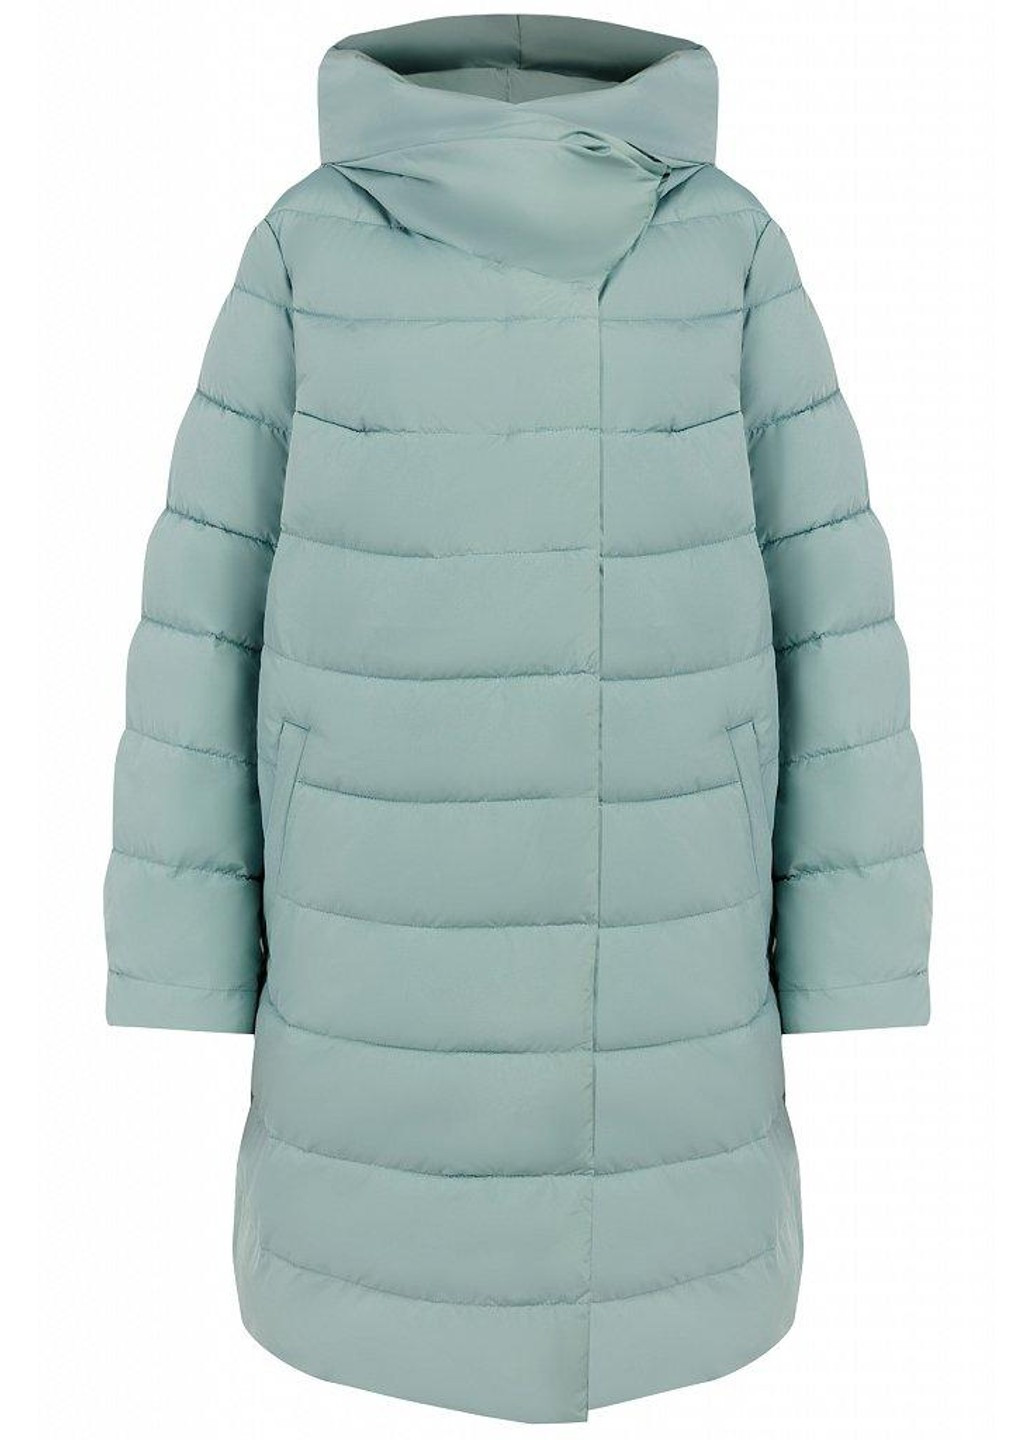 Бірюзова зимня зимова куртка w19-32020-903 Finn Flare